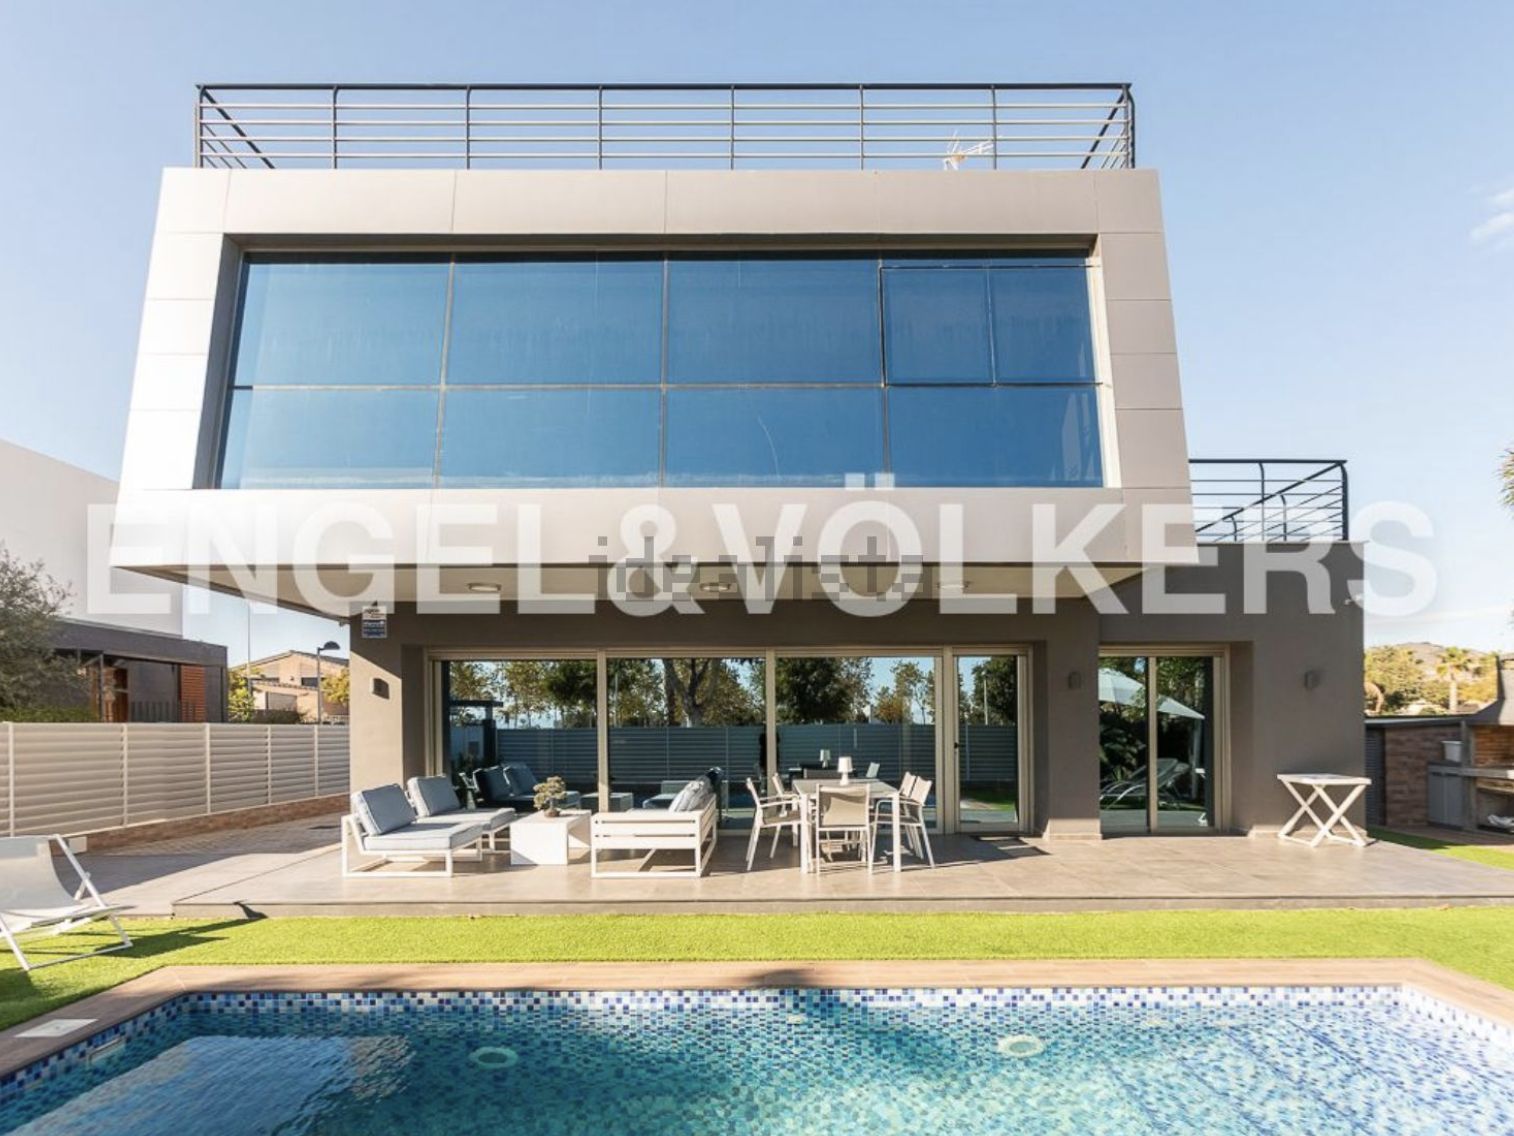 Casa de diseño a la venta por 950.000 euros